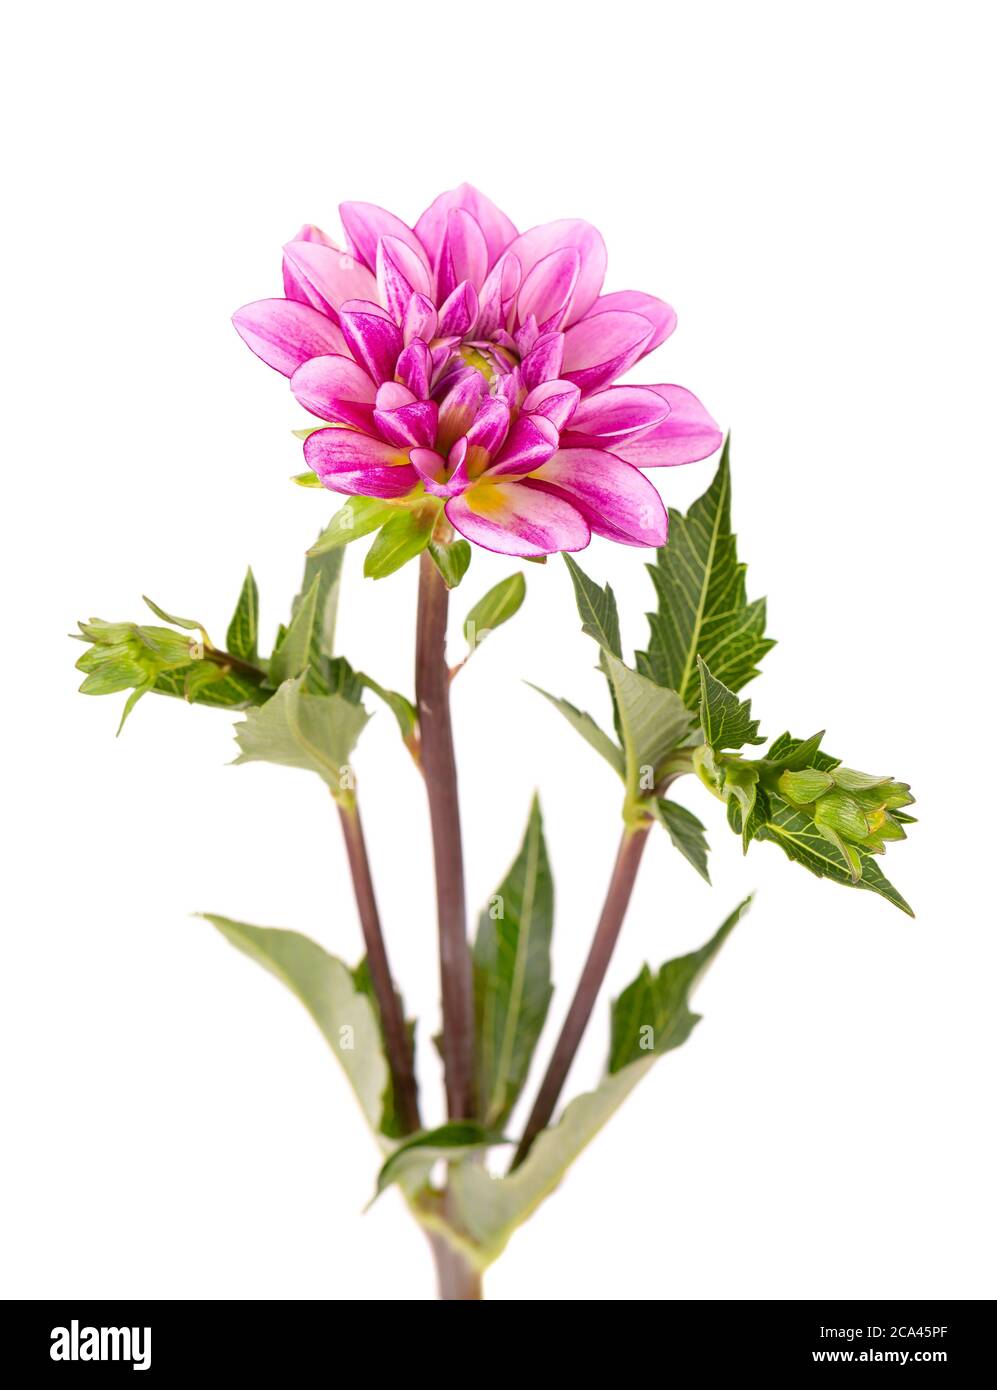 Fiore di Dahlia. Fiore rosa Dahlia con foglie verdi, isolato su sfondo bianco, con tracciato di ritaglio. Foto Stock